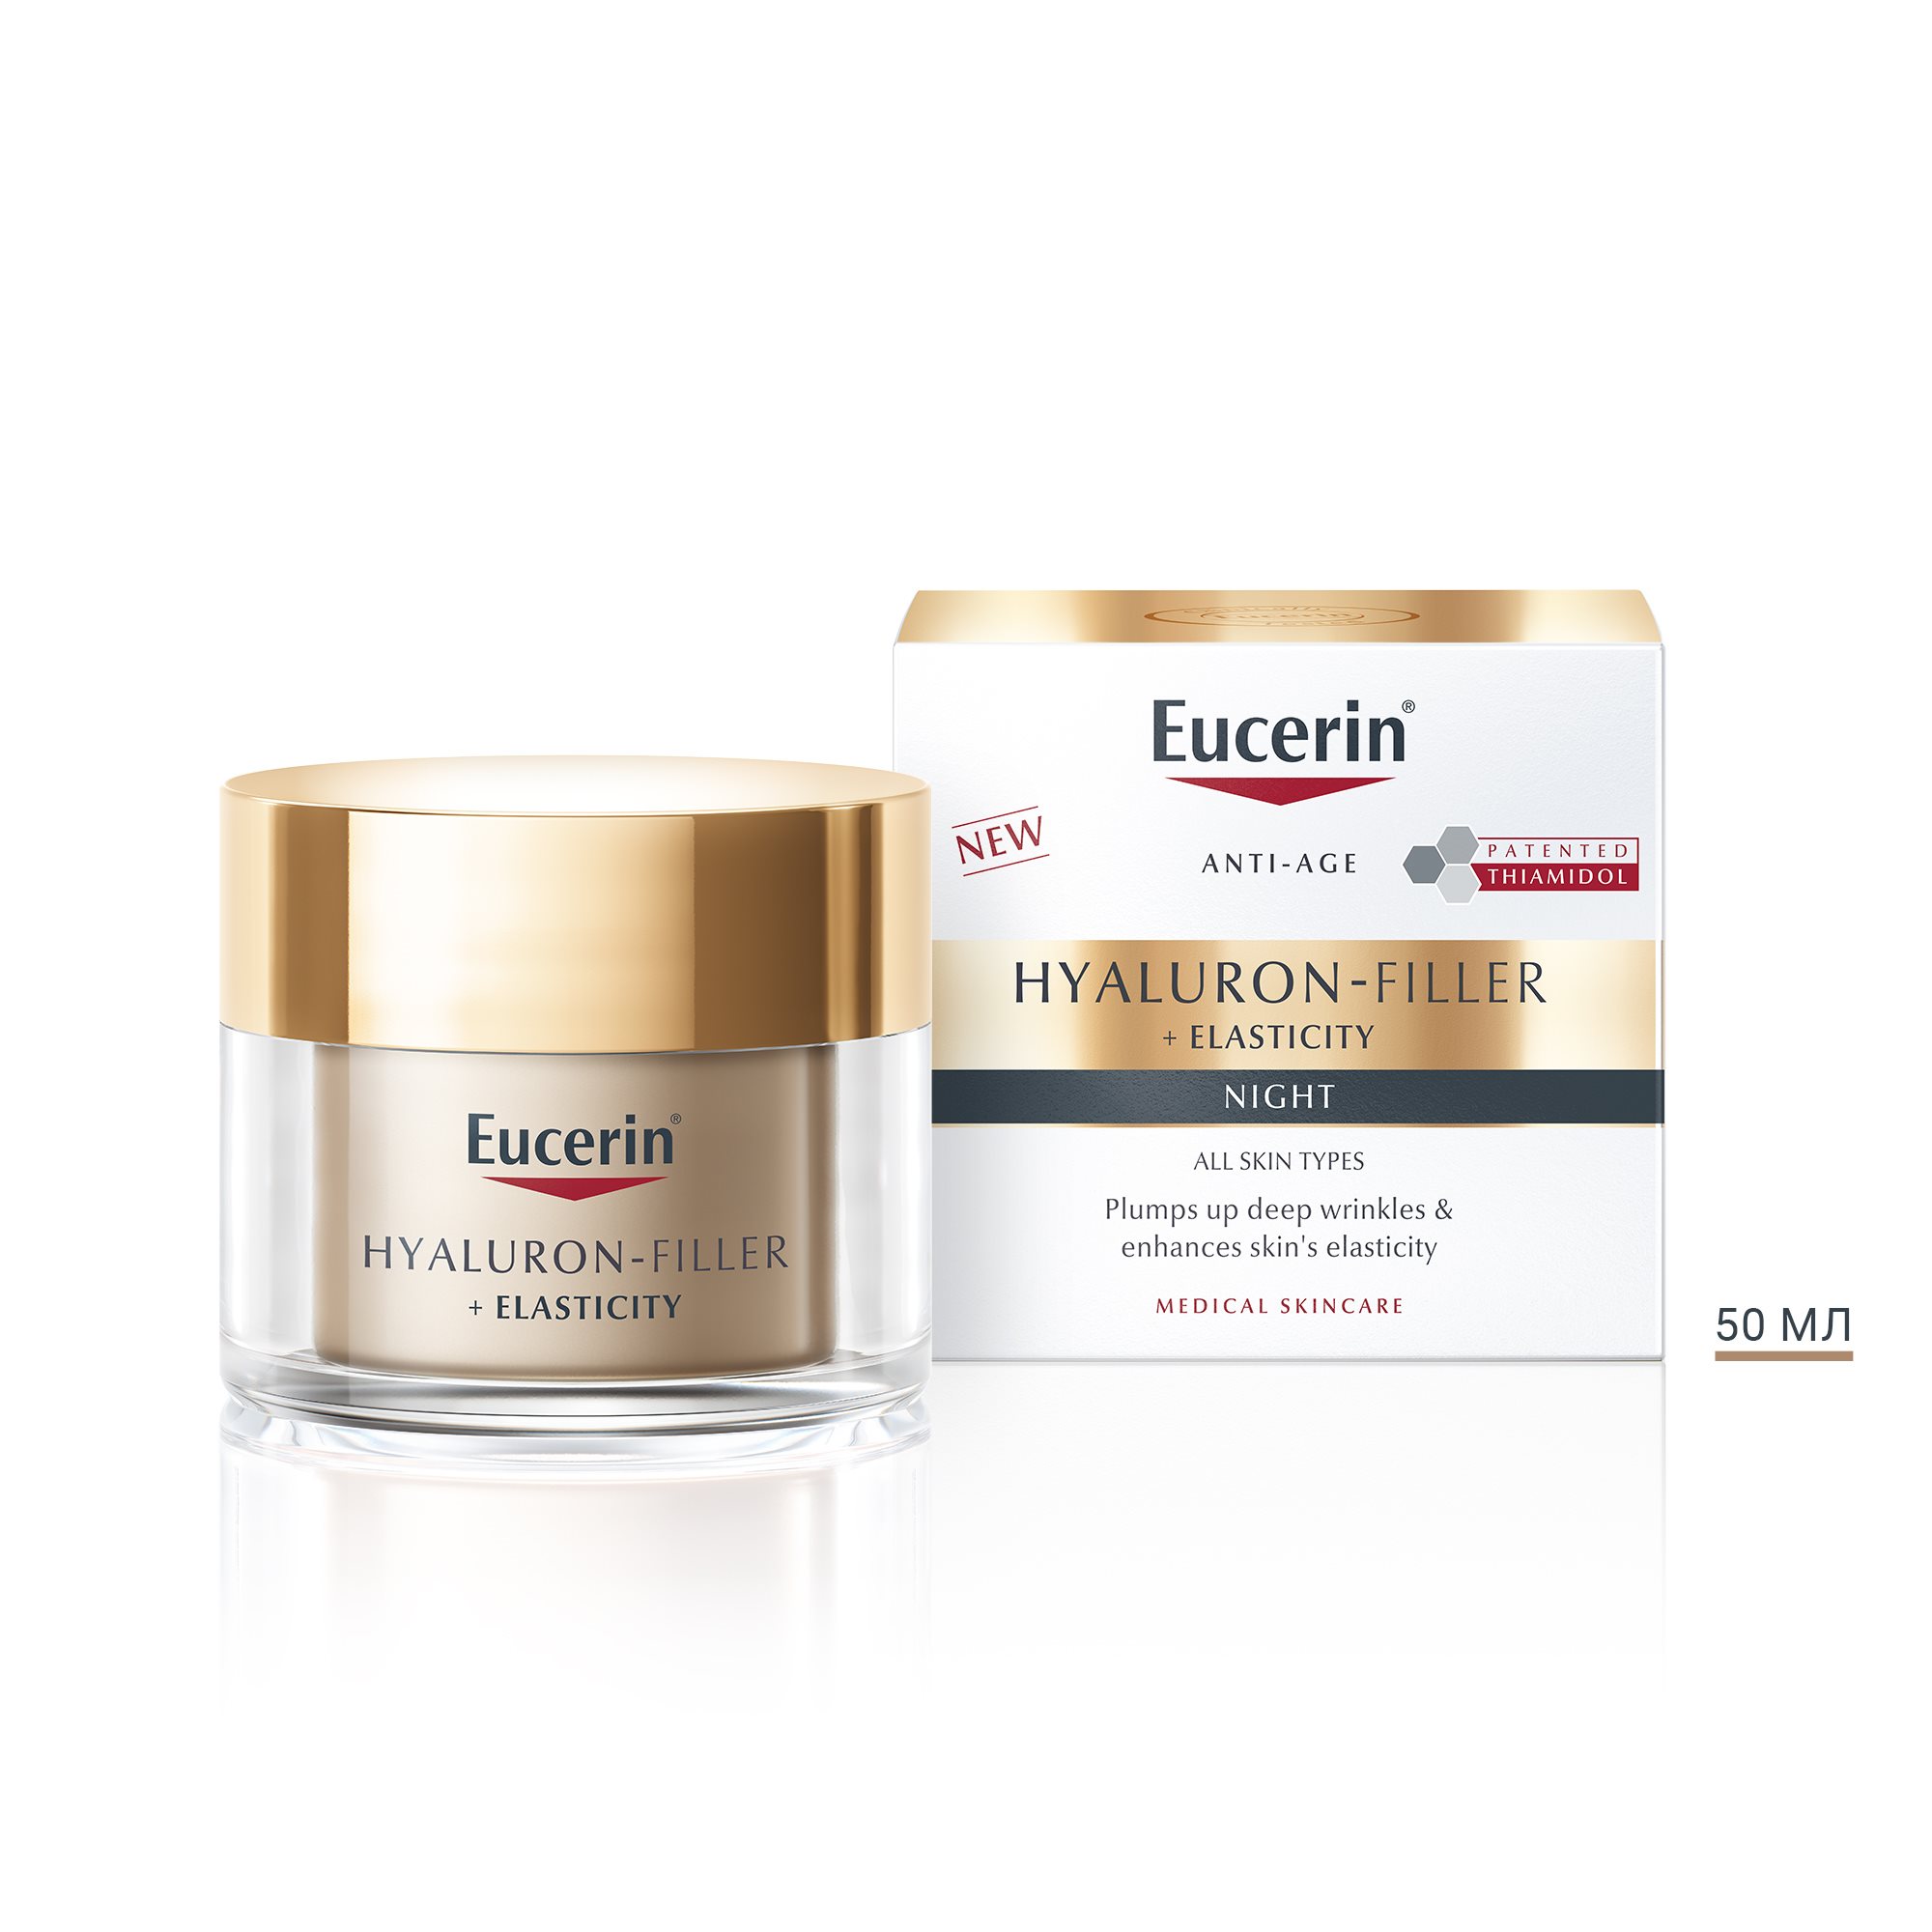 Eucerin Hyaluron-Filler + Elasticity Нічний антивіковий крем для шкіри обличчя, 50мл